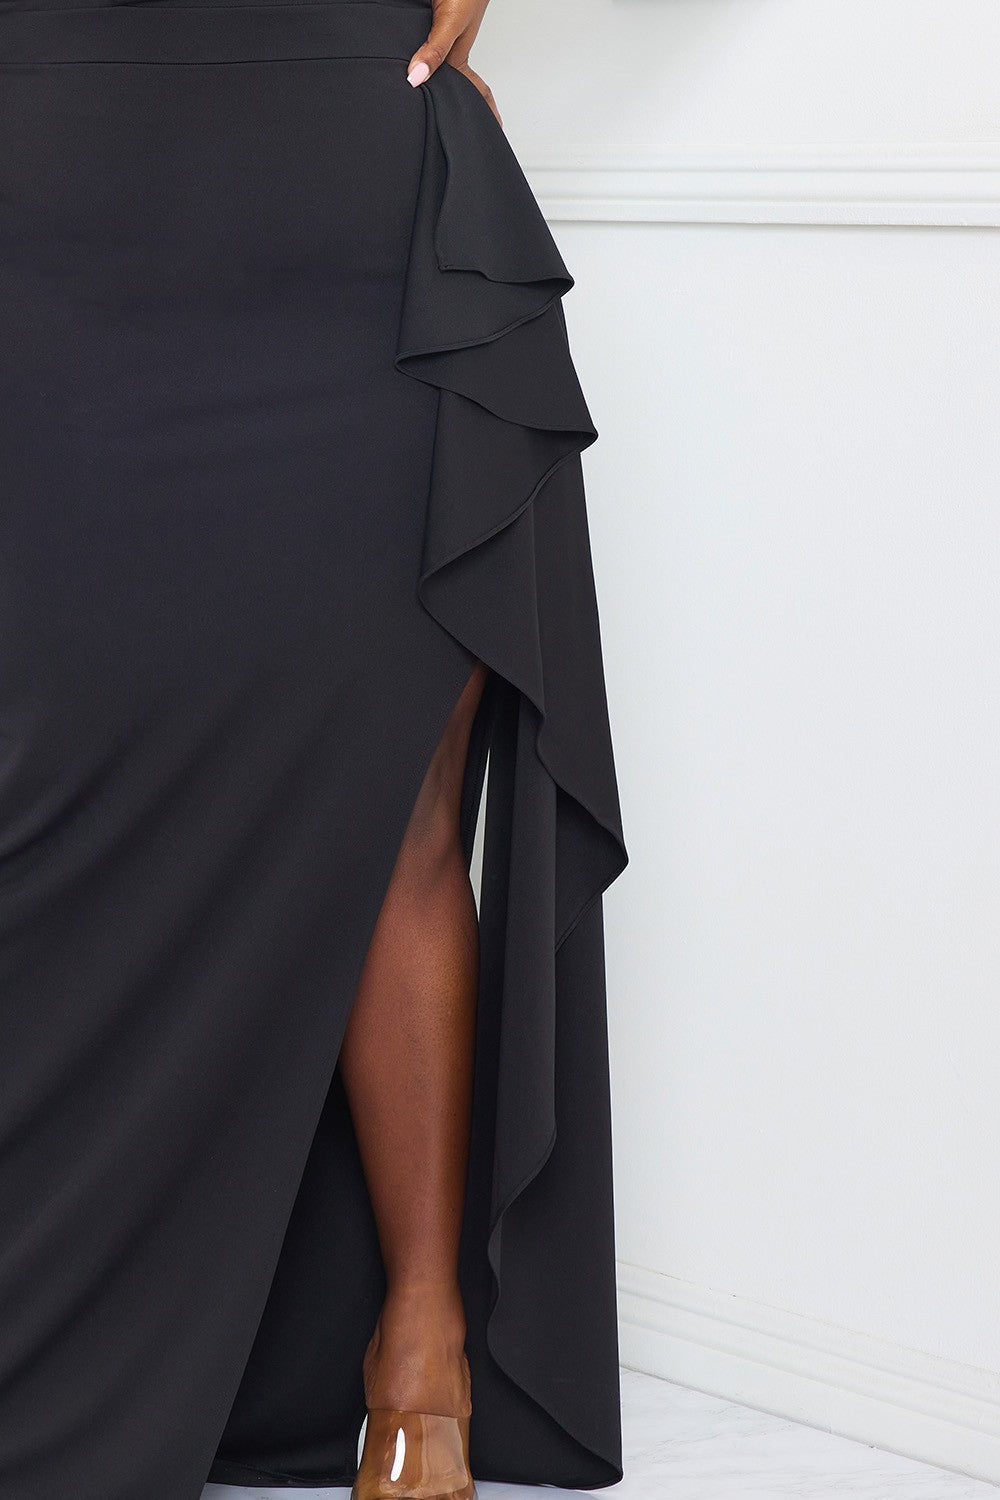 Queen Ramona Dress (Black)